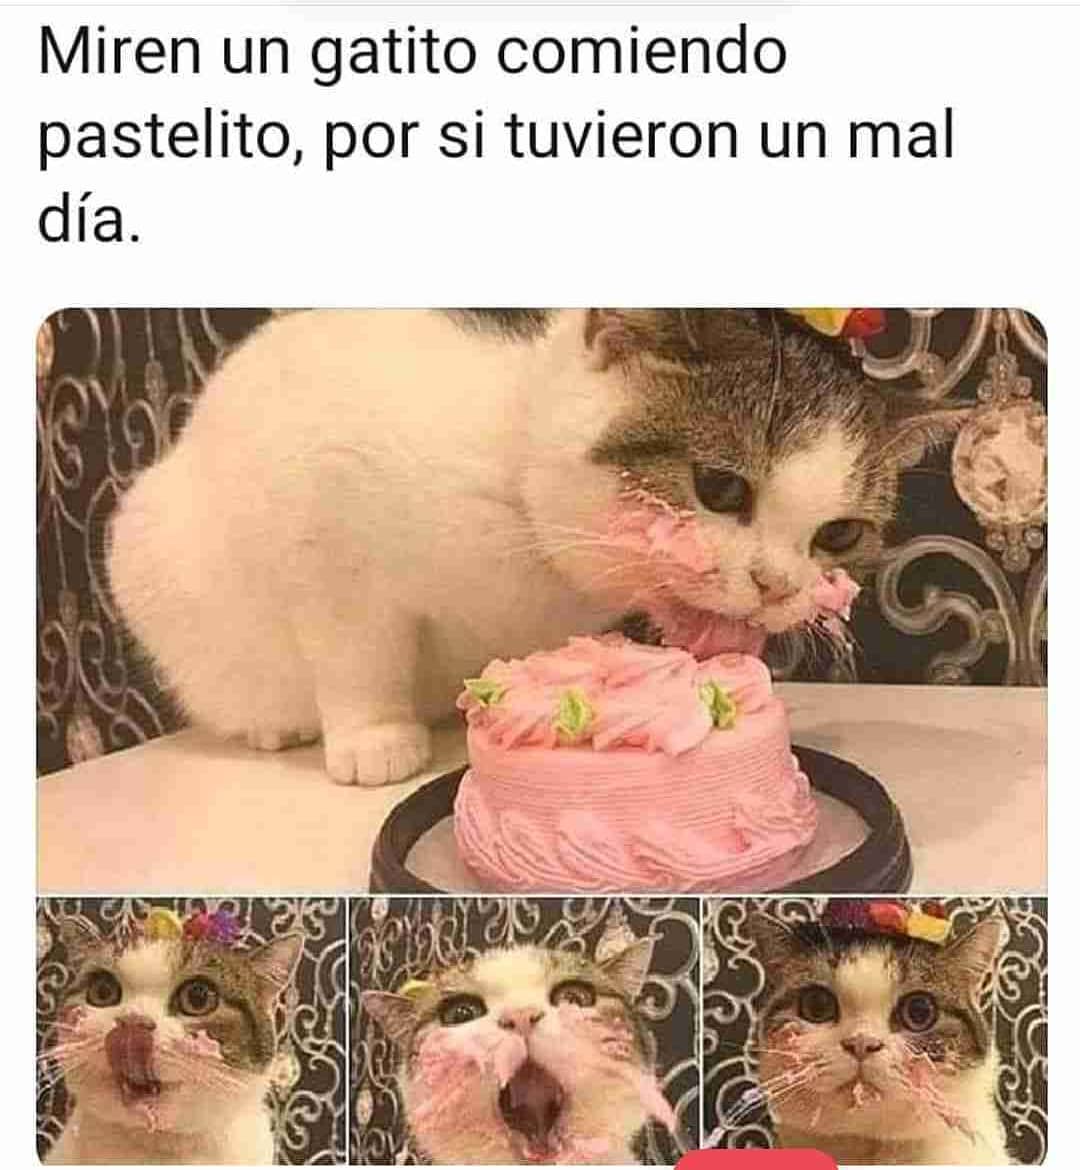 Miren un gatito comiendo pastelito, por si tuvieron un mal día.